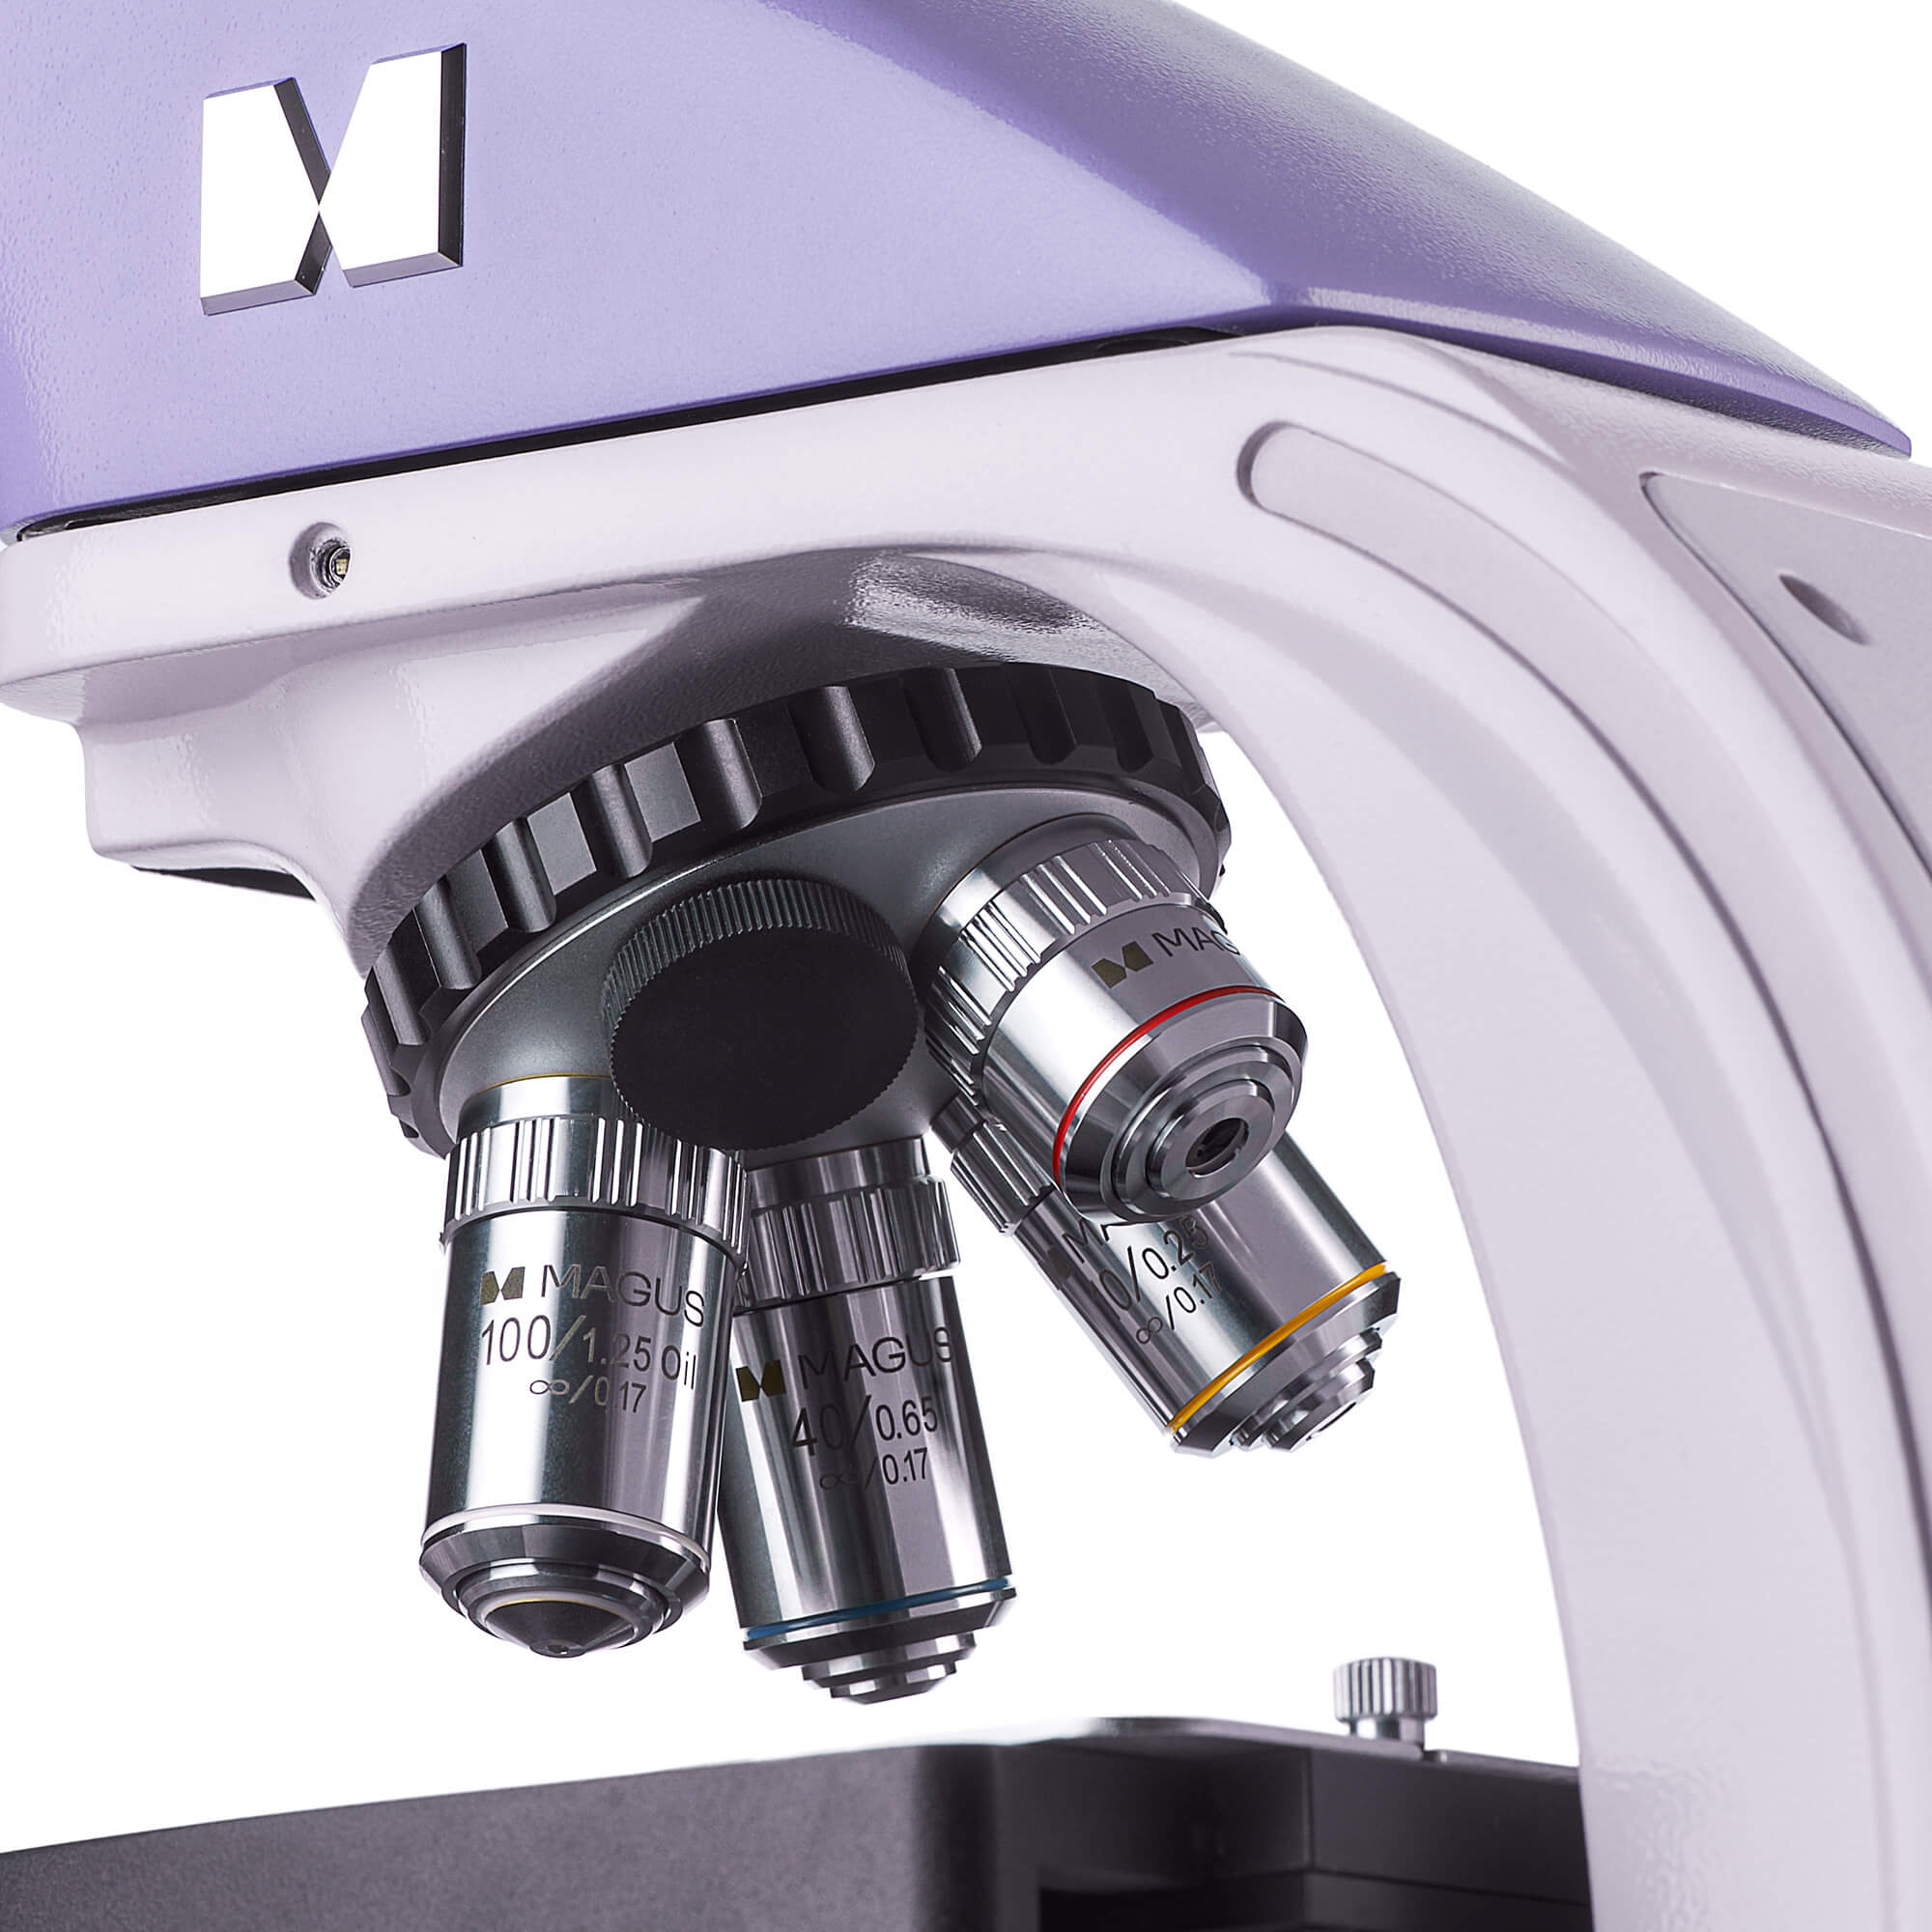 Trinokulárny, biologický mikroskop MAGUS Bio 230T revolverový nosič